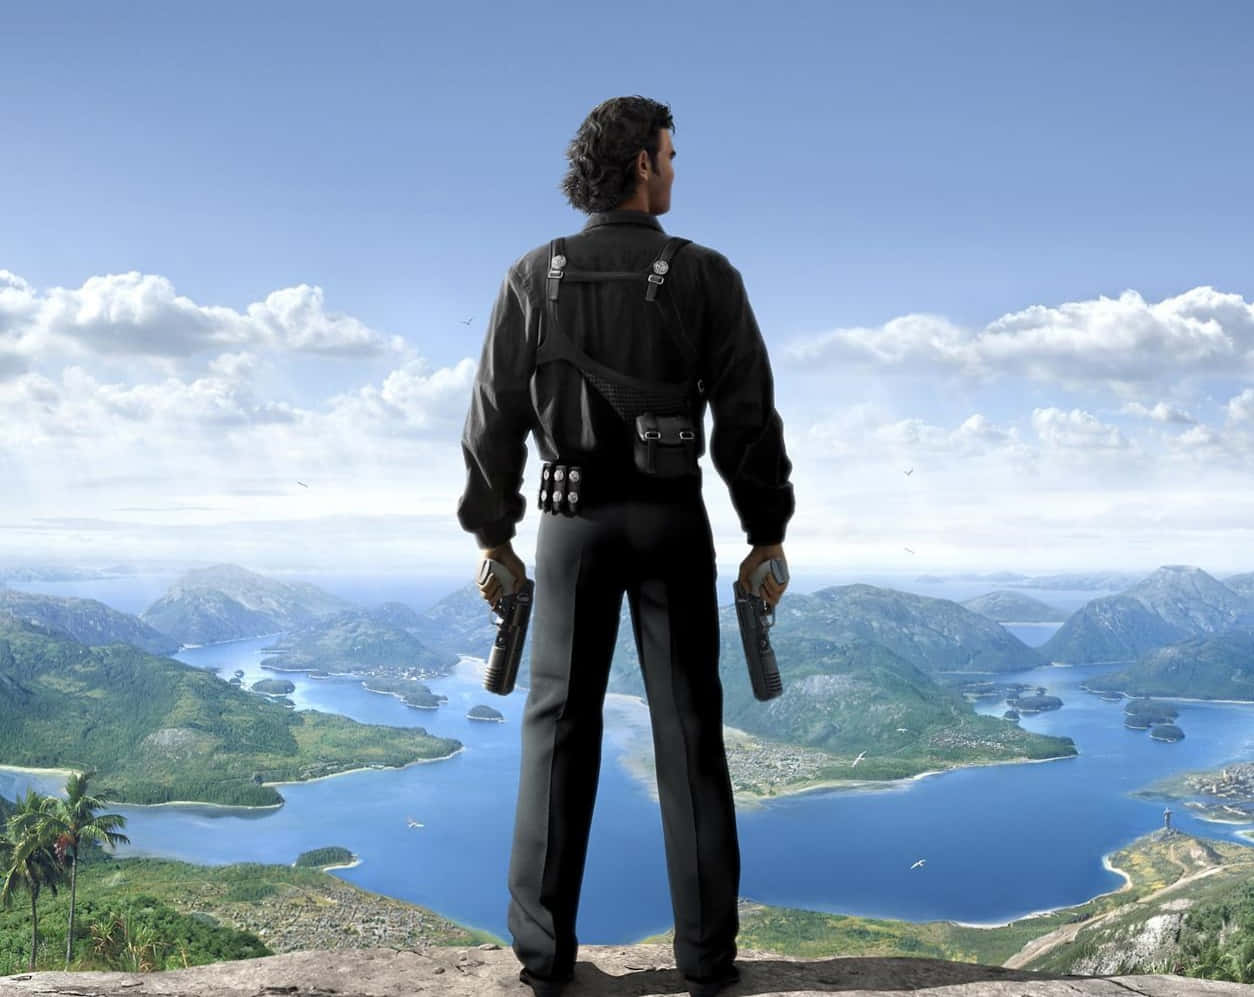 Far Cry 3 - Computerbildschirmhintergrund - Computerbildschirmhintergrund - Computerbildschirmhintergrund - Computerbildschirmhintergrund - Computerbildschirmhintergrund - Computerbildschirmhintergrund Wallpaper